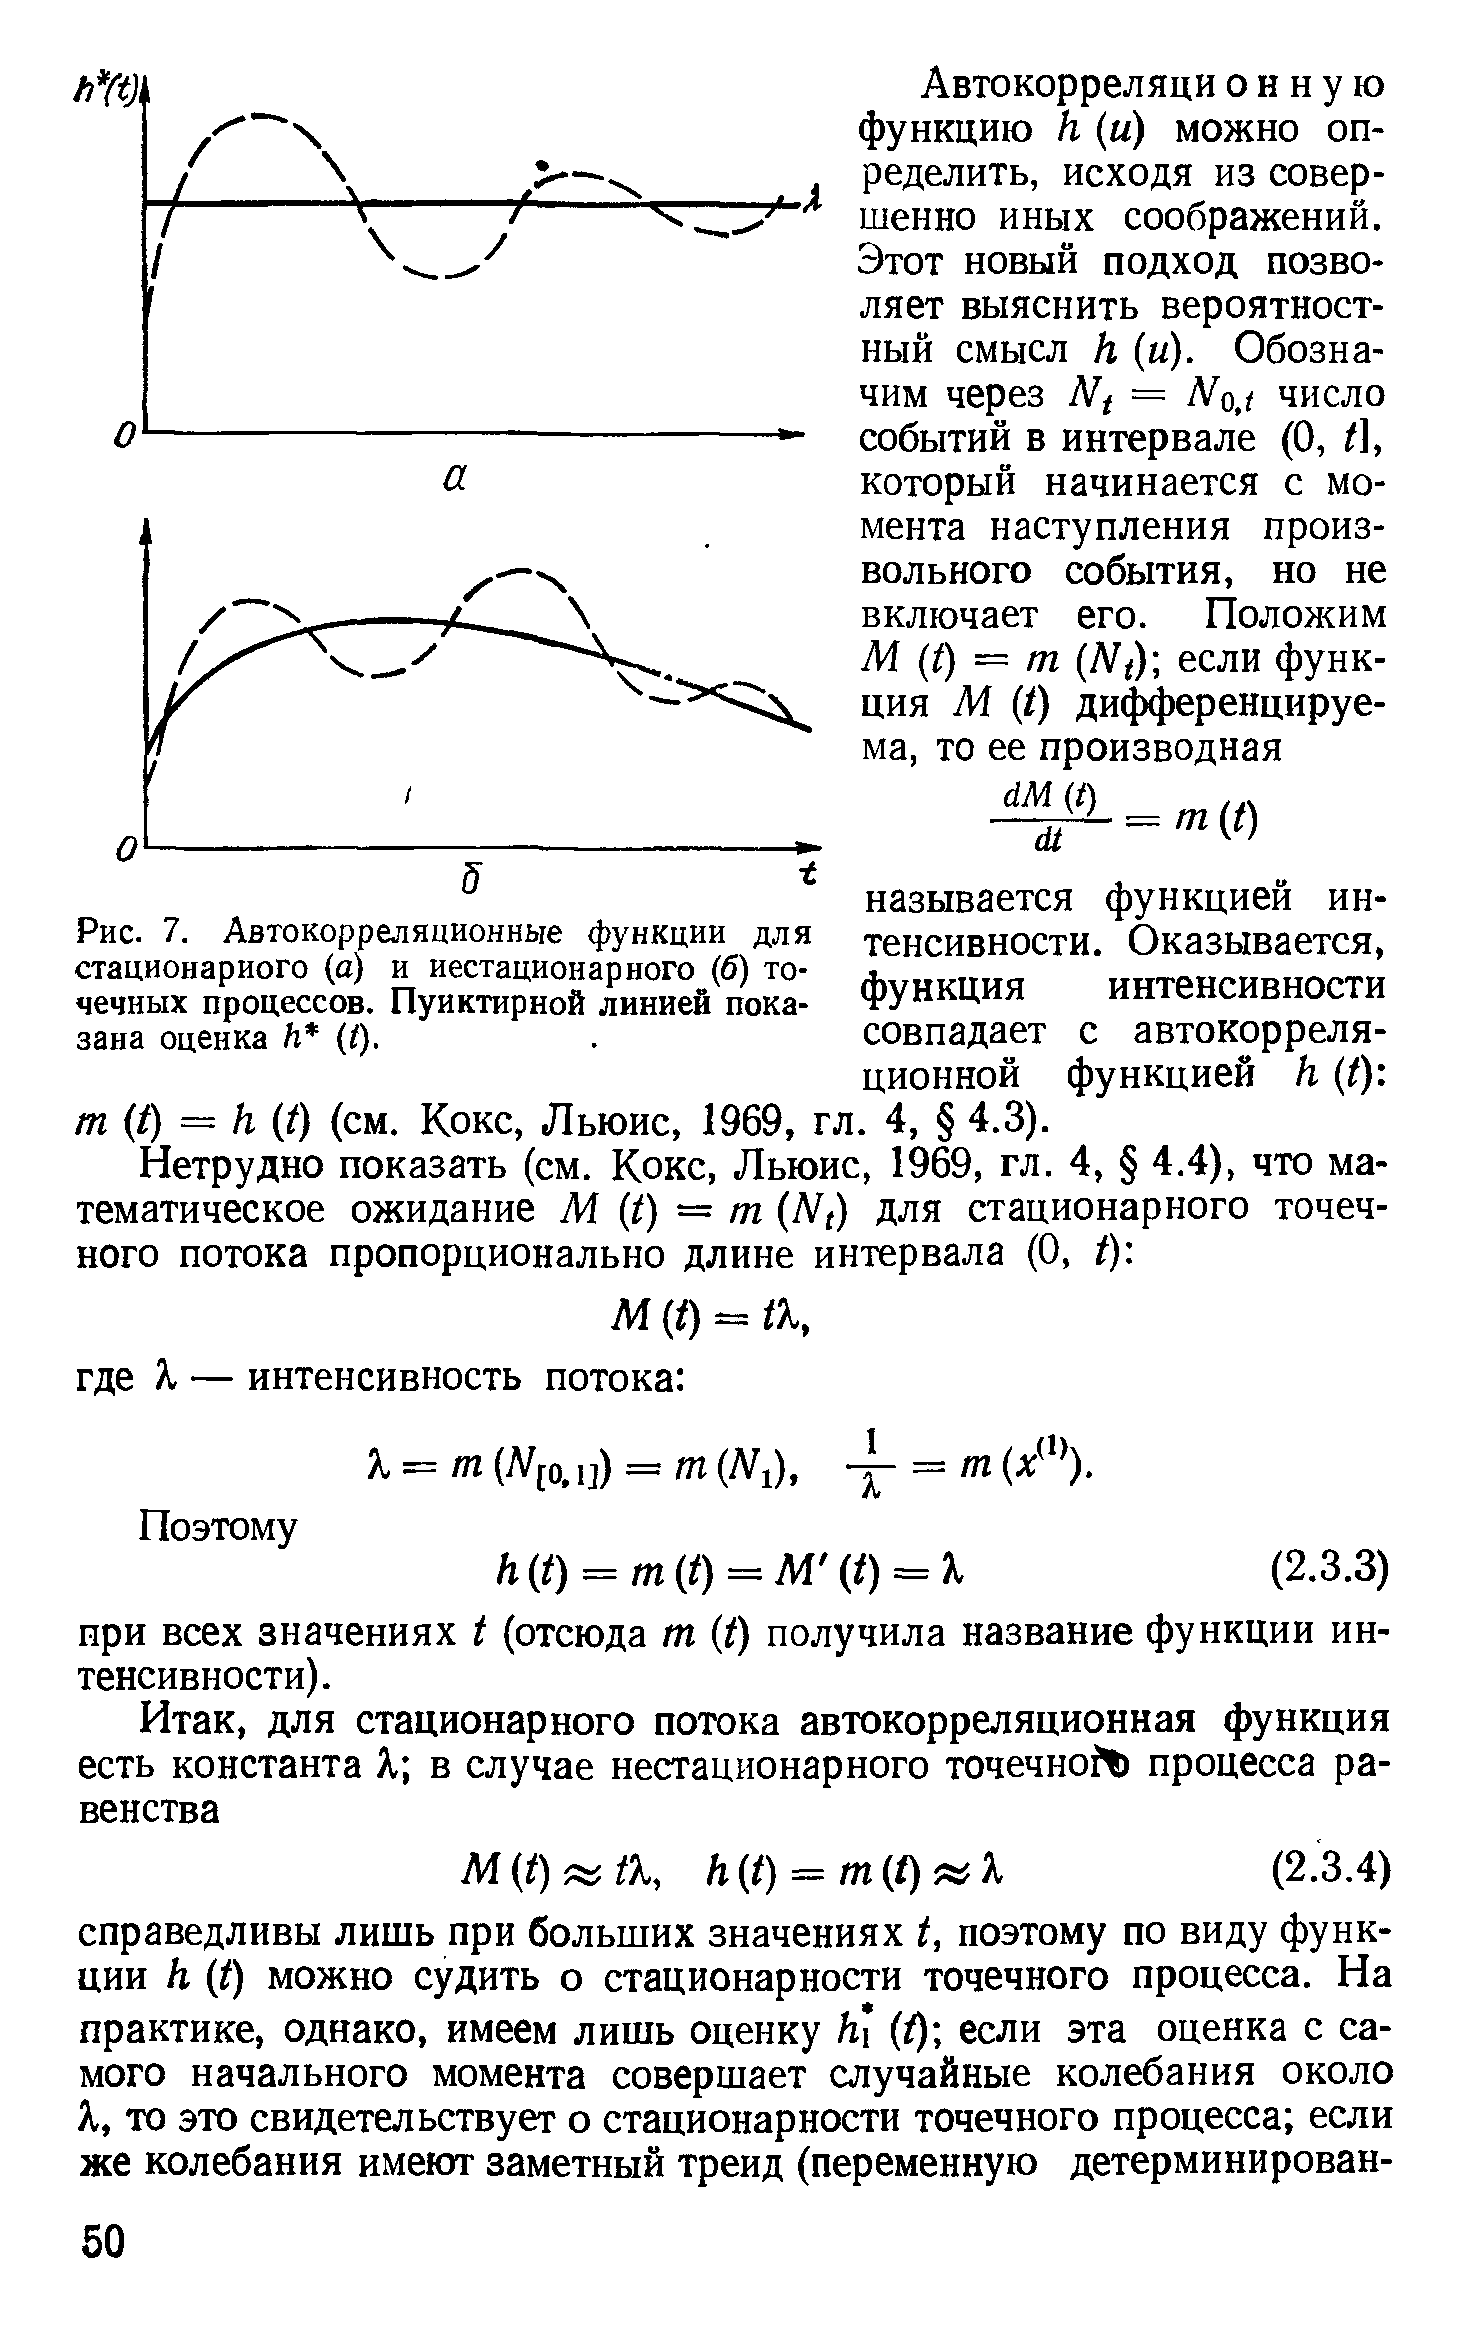 Рис. 7. Автокорреляционные функции для стационарного (а) и нестационарного (б) точечных процессов. Пунктирной линией показана оценка И (I).